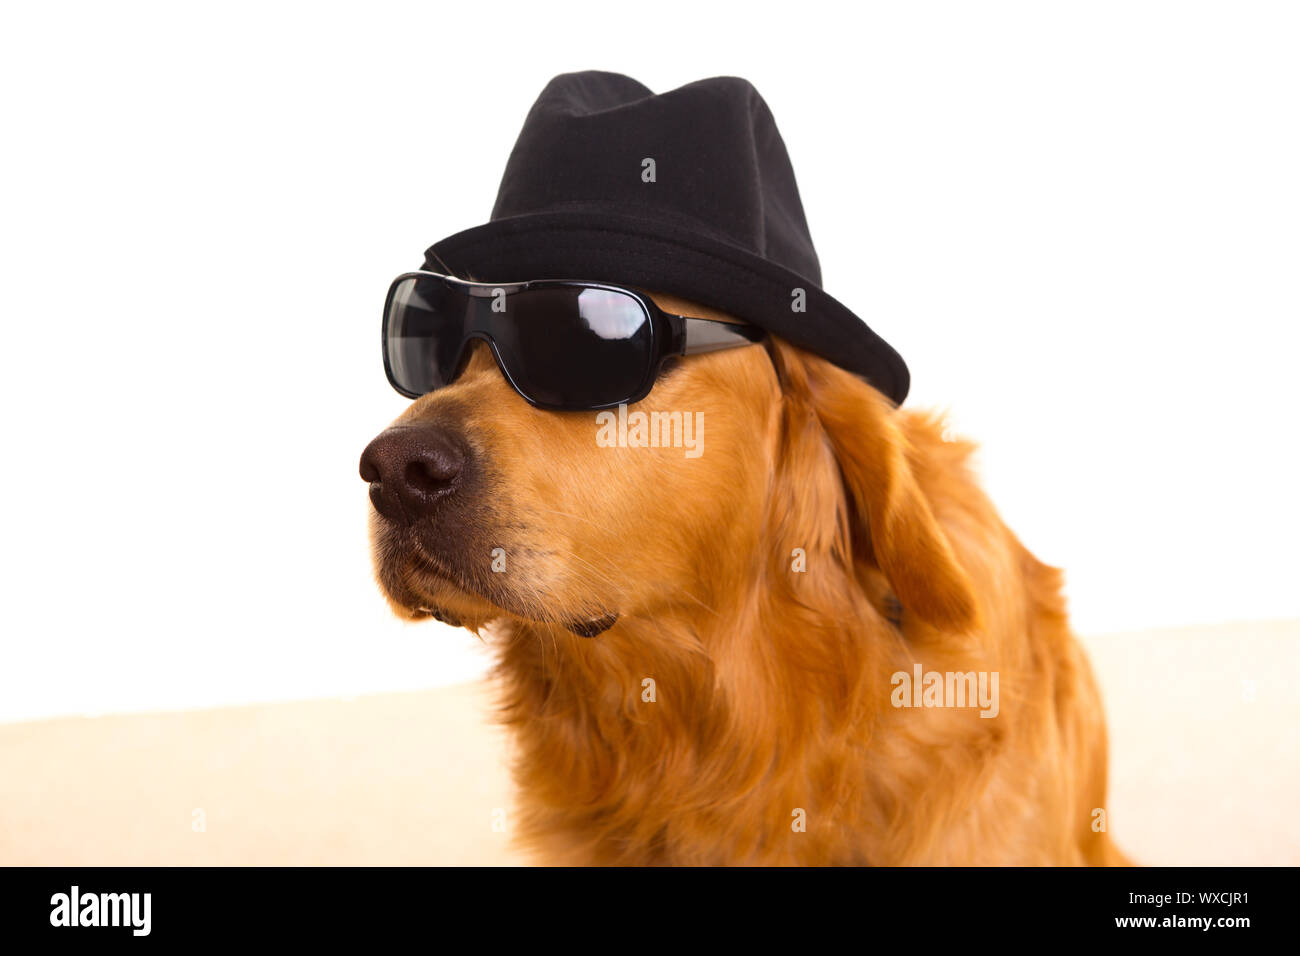 Verkleidet als Mafia-Gangster mit schwarzem Hut und Sonnenbrille golden  Retriever Hund Stockfotografie - Alamy